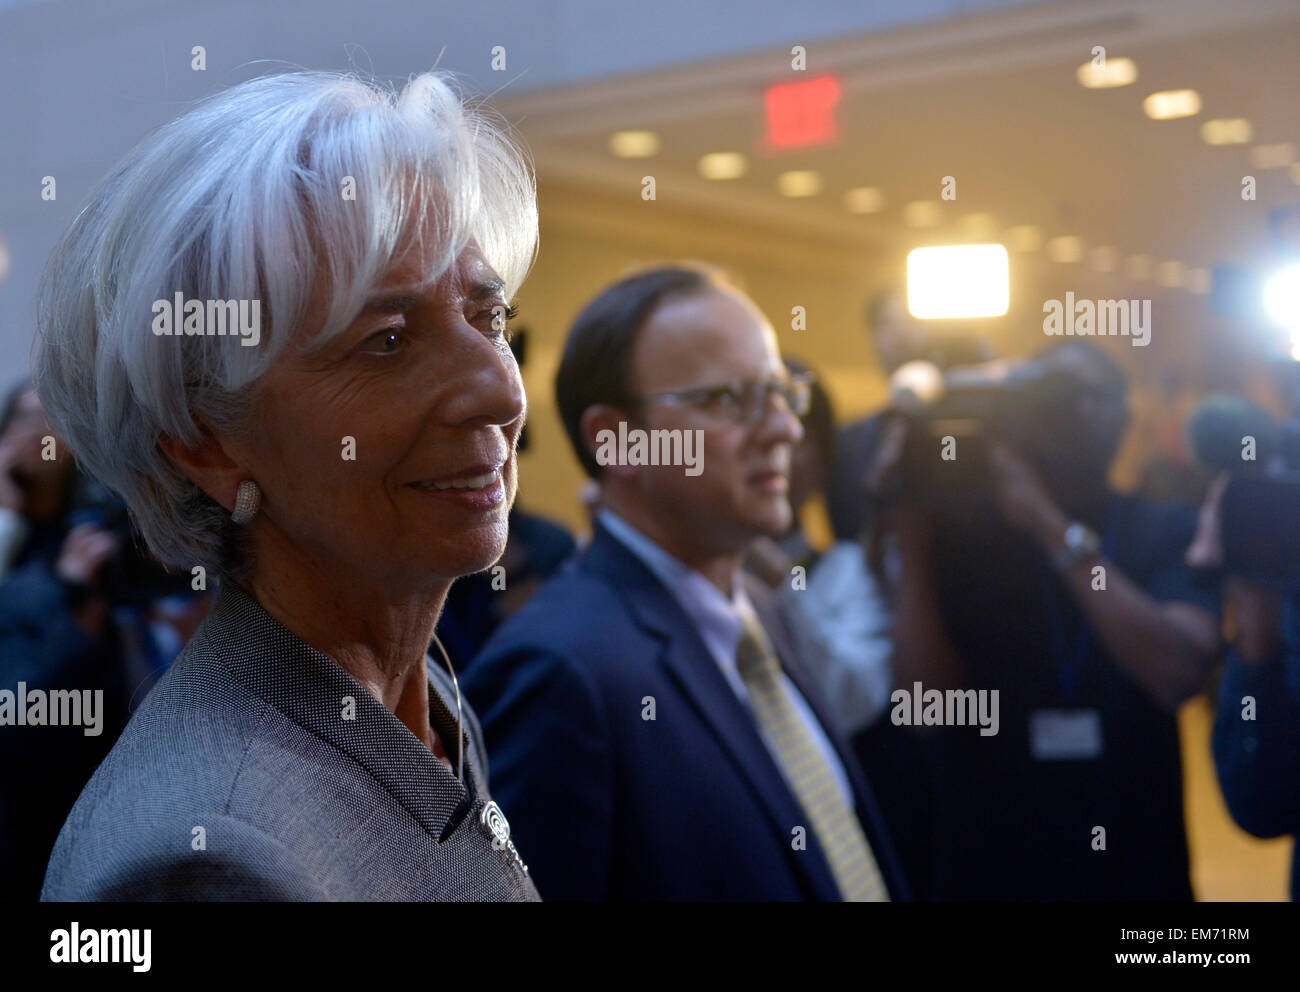 Washington, DC, USA. Apr 16, 2015. Fonds monétaire international (FMI), Christine Lagarde Directeur arrive pour la réunion des ministres des finances du G20 et des gouverneurs de banque centrale à Washington, DC, la capitale des États-Unis, le 16 avril 2015. Credit : Yin Bogu/Xinhua/Alamy Live News Banque D'Images